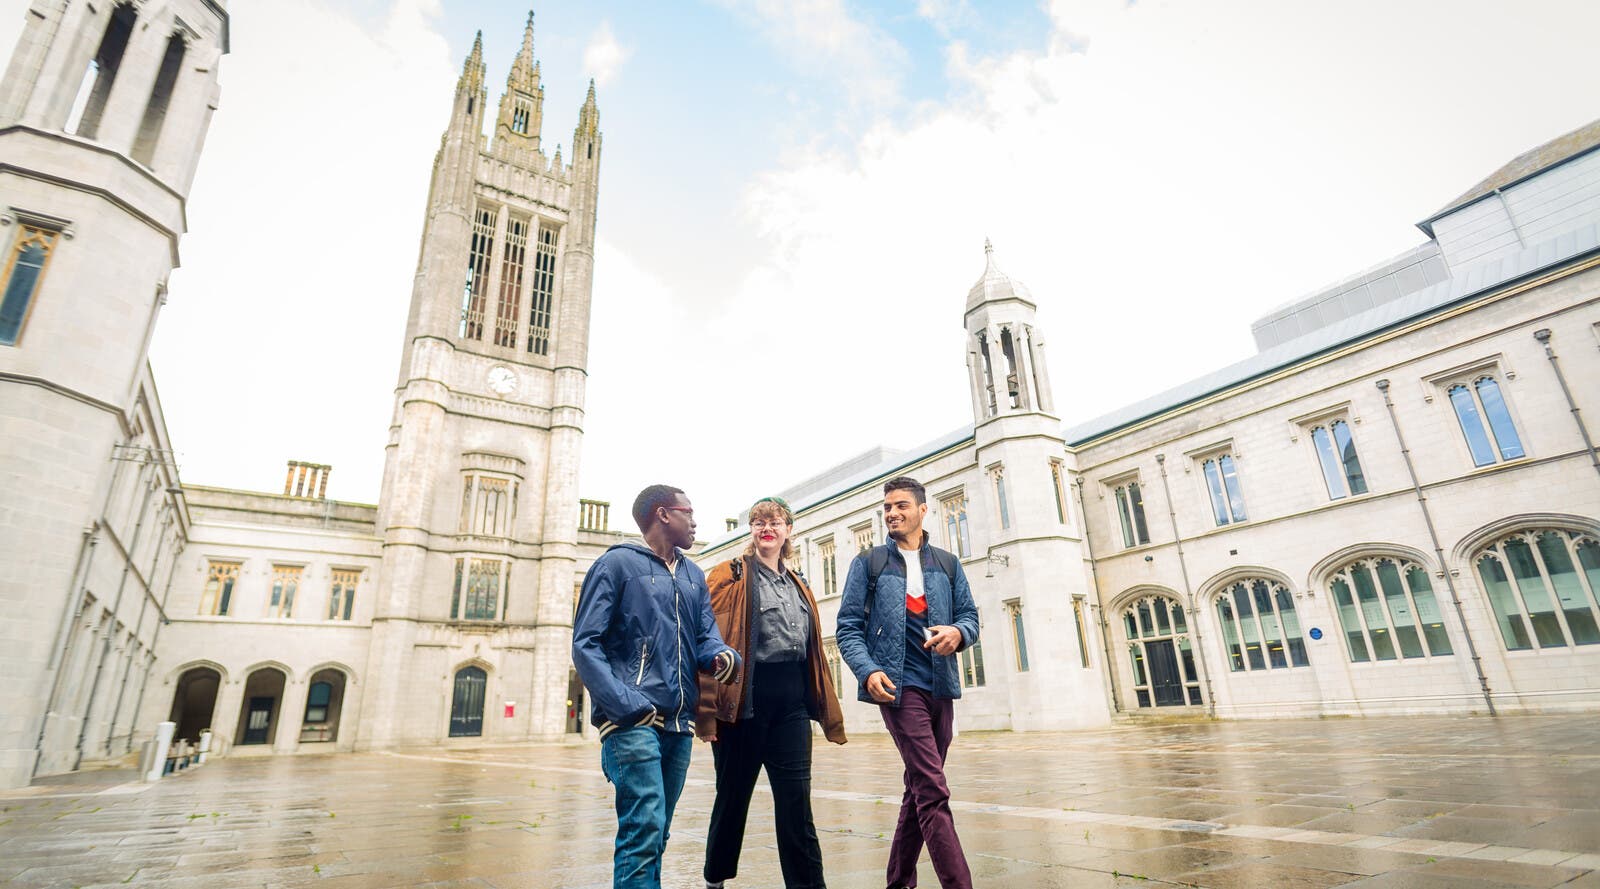 Three students walking through Aberdeen